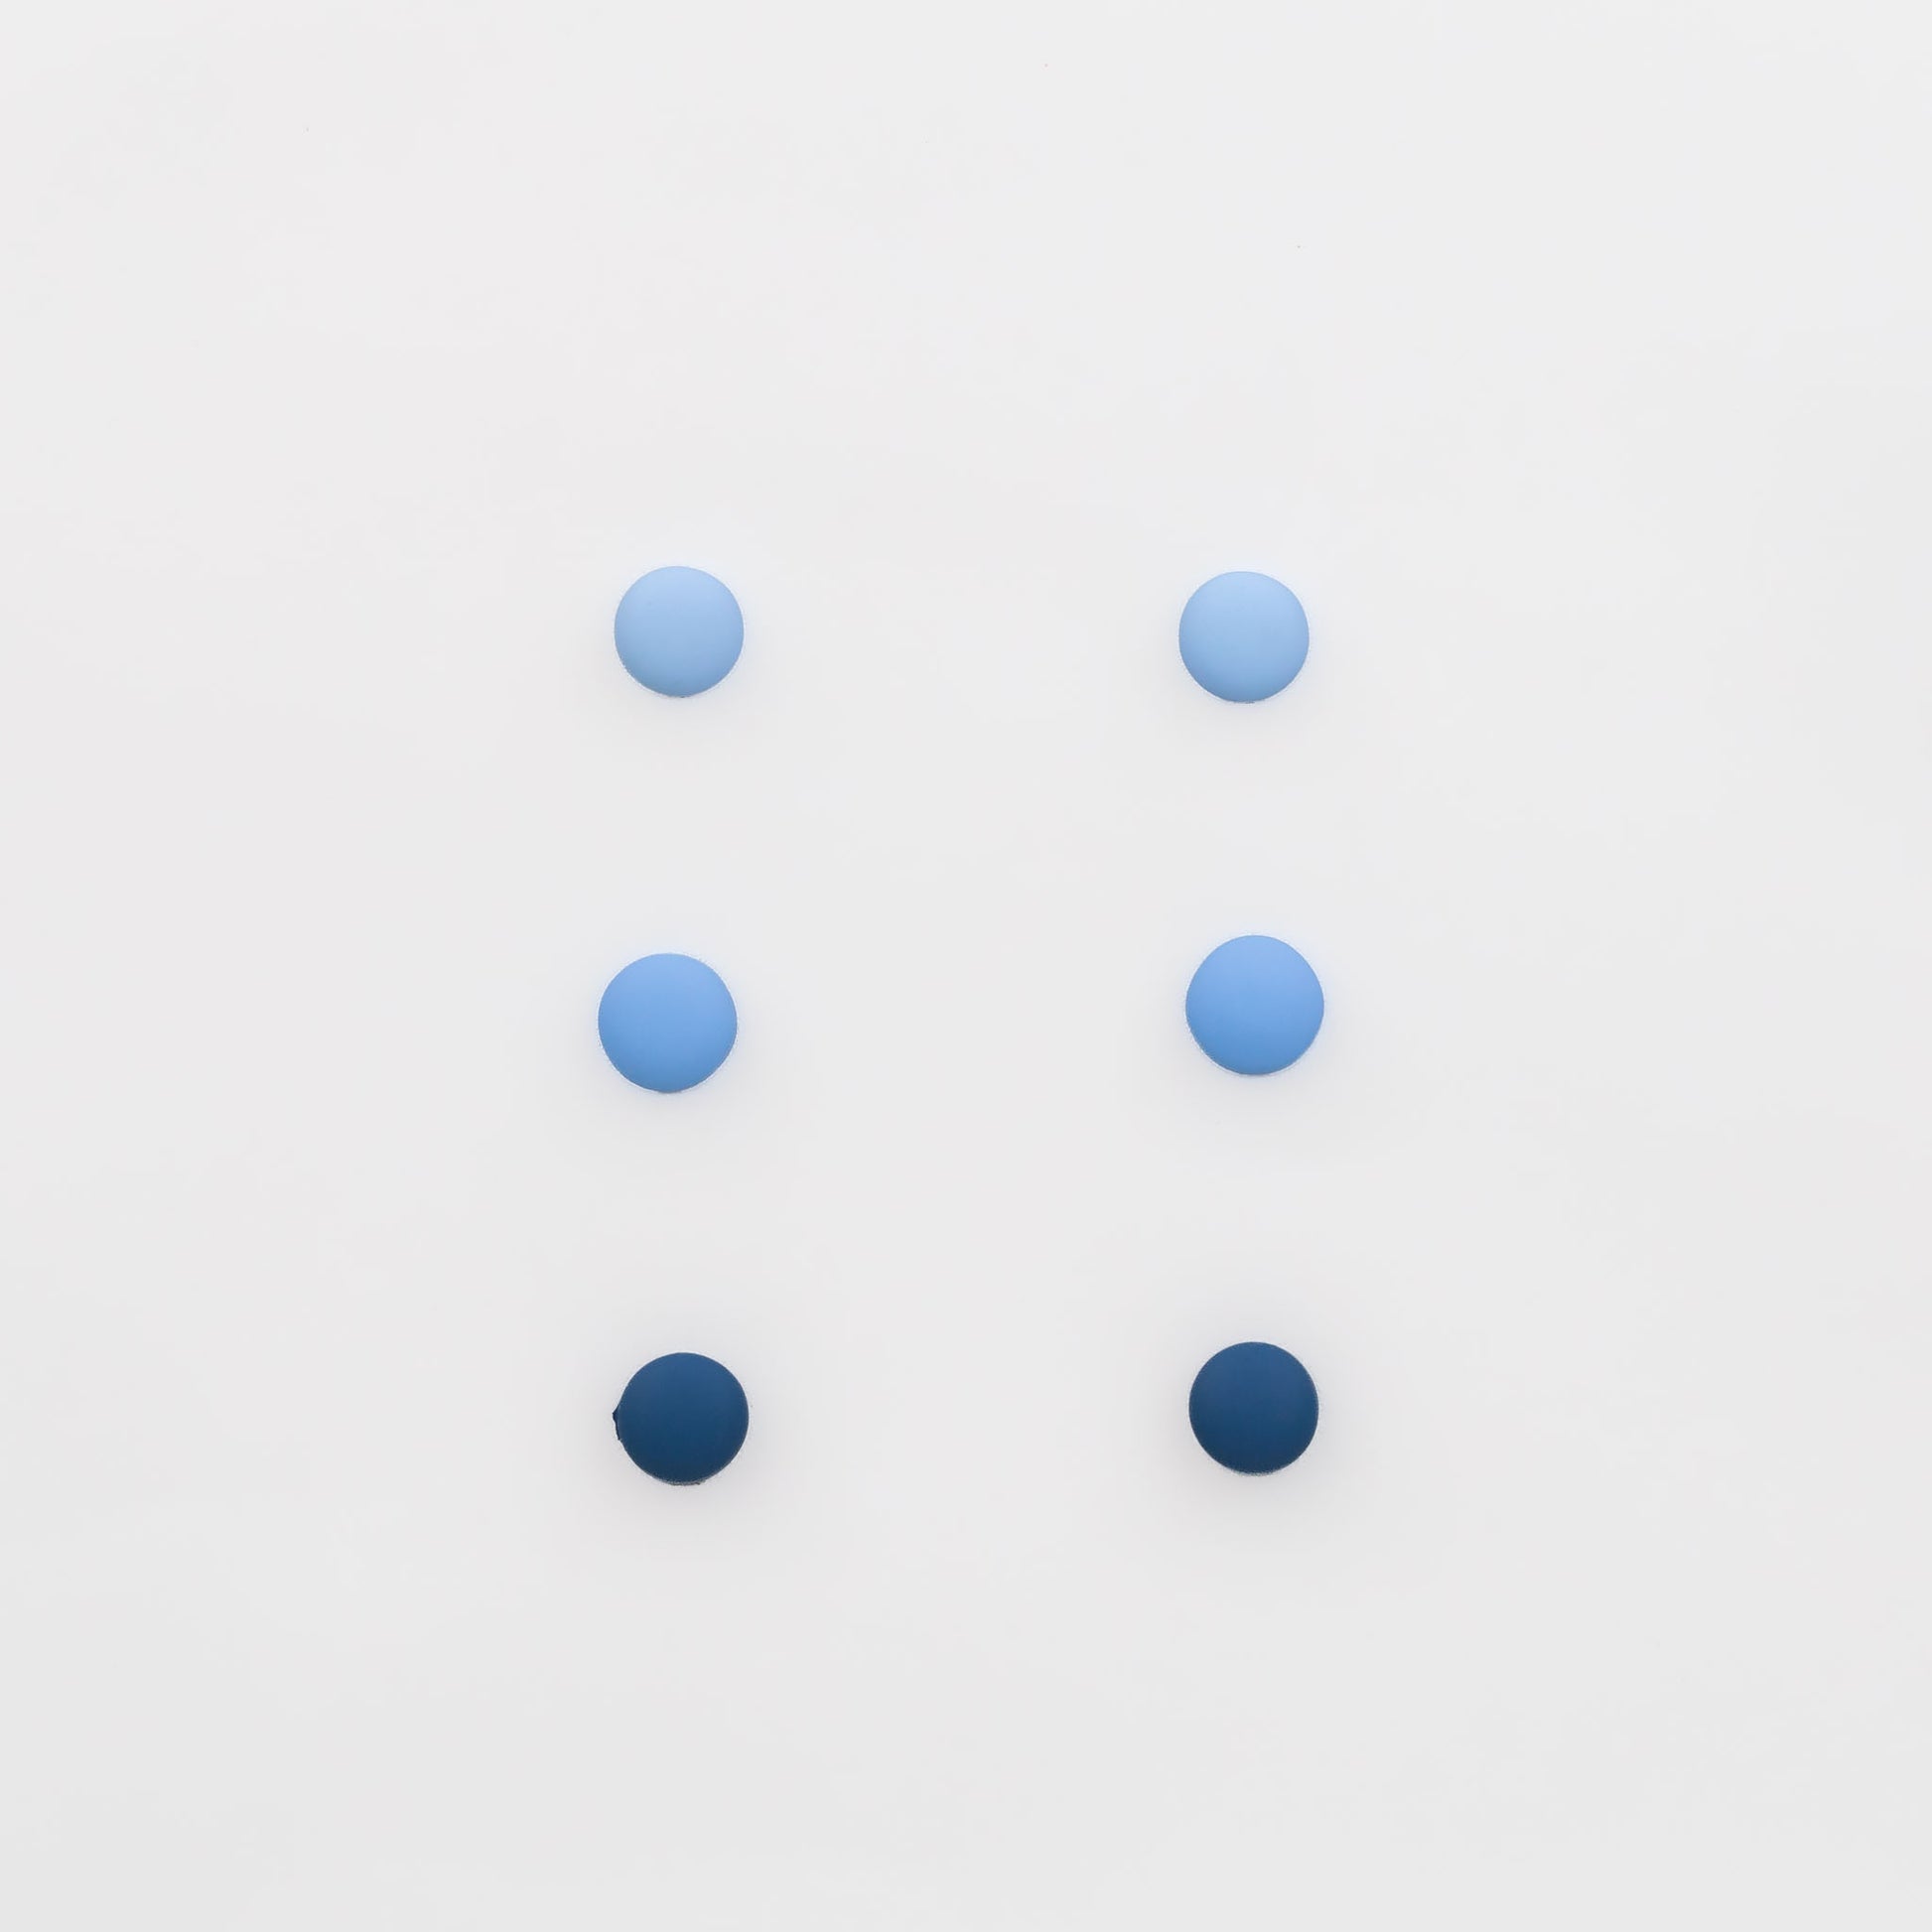 Cercei mici discreți tip buton cu textură siliconată, set 3 perechi - Albastru